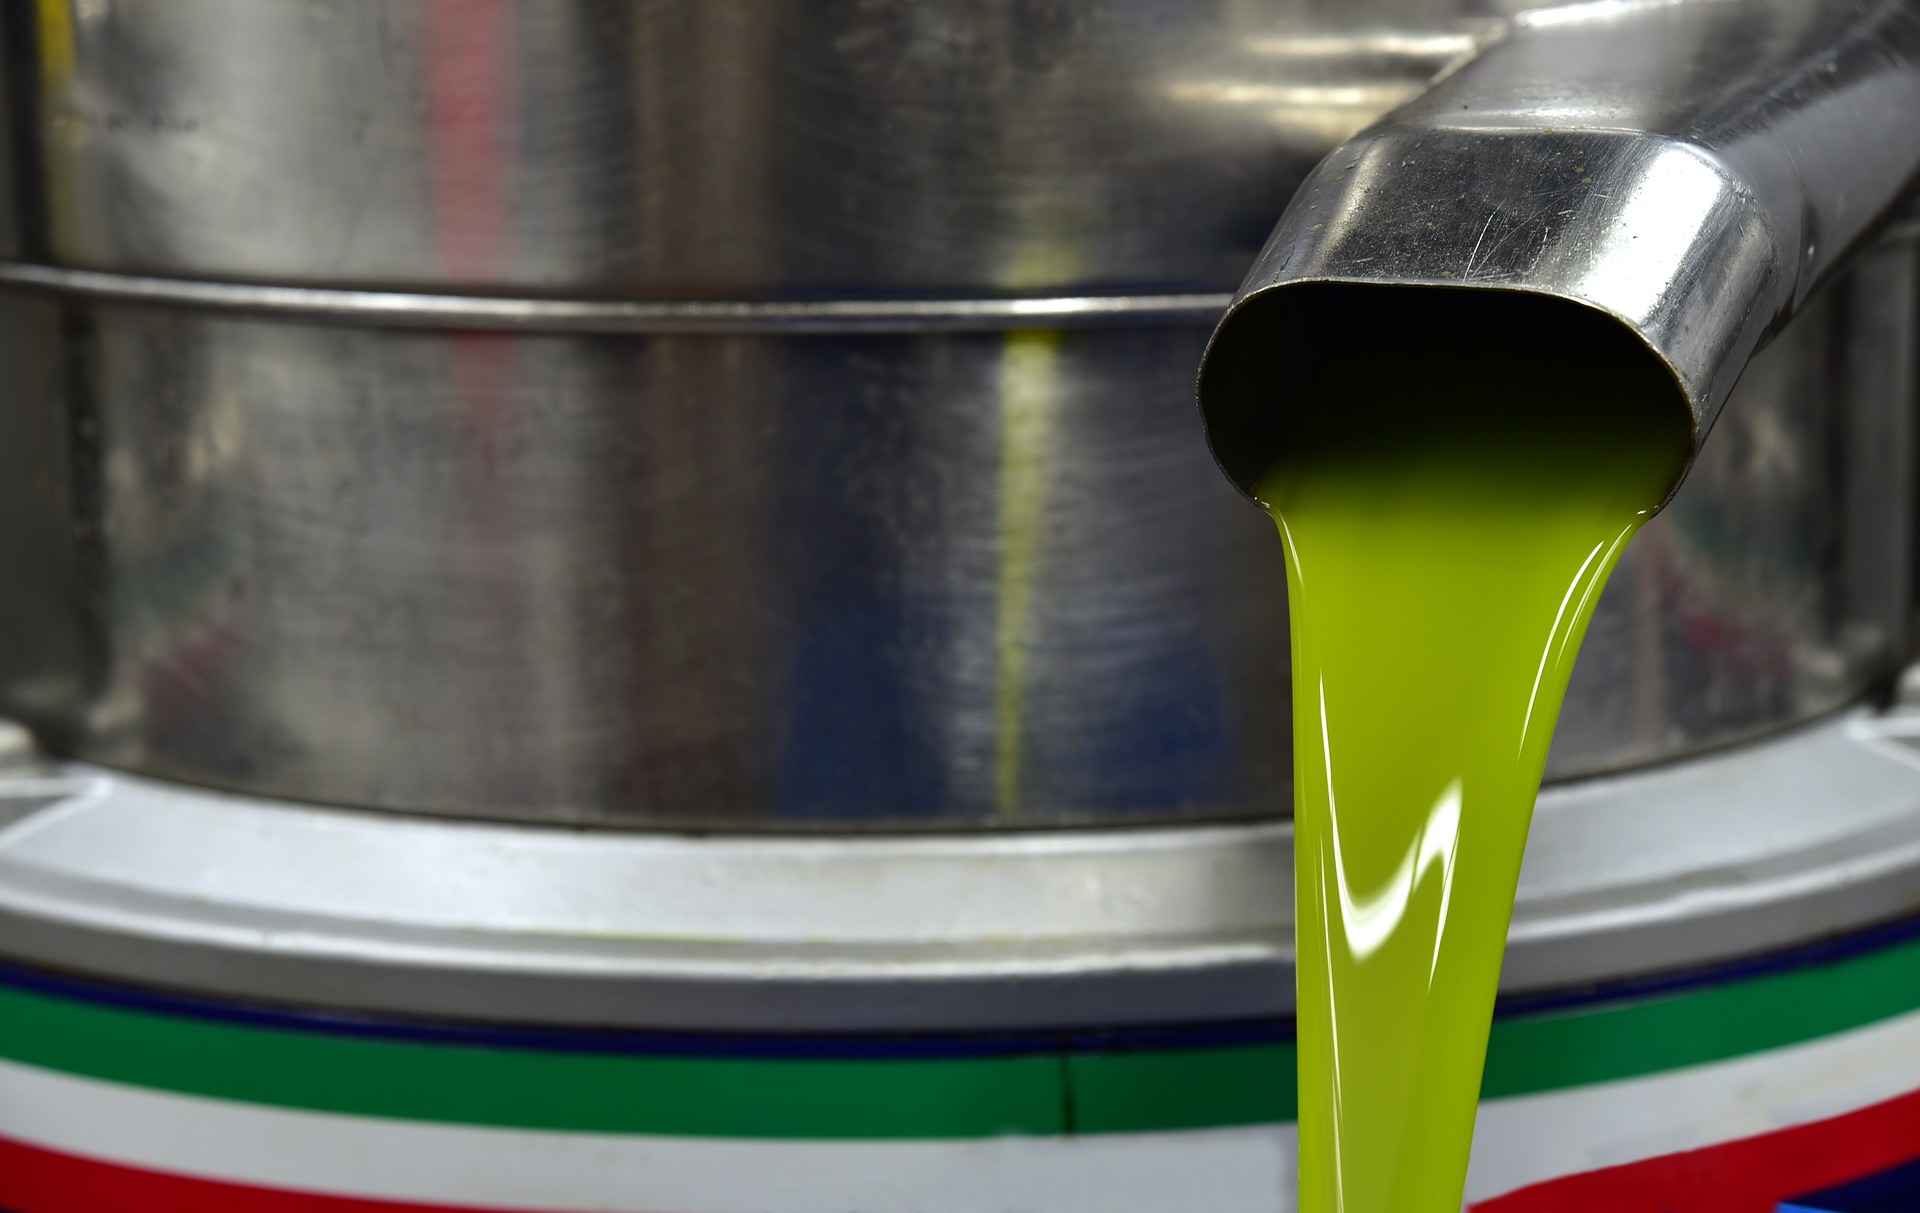 Envases de plástico: los mejores para tu aceite de oliva